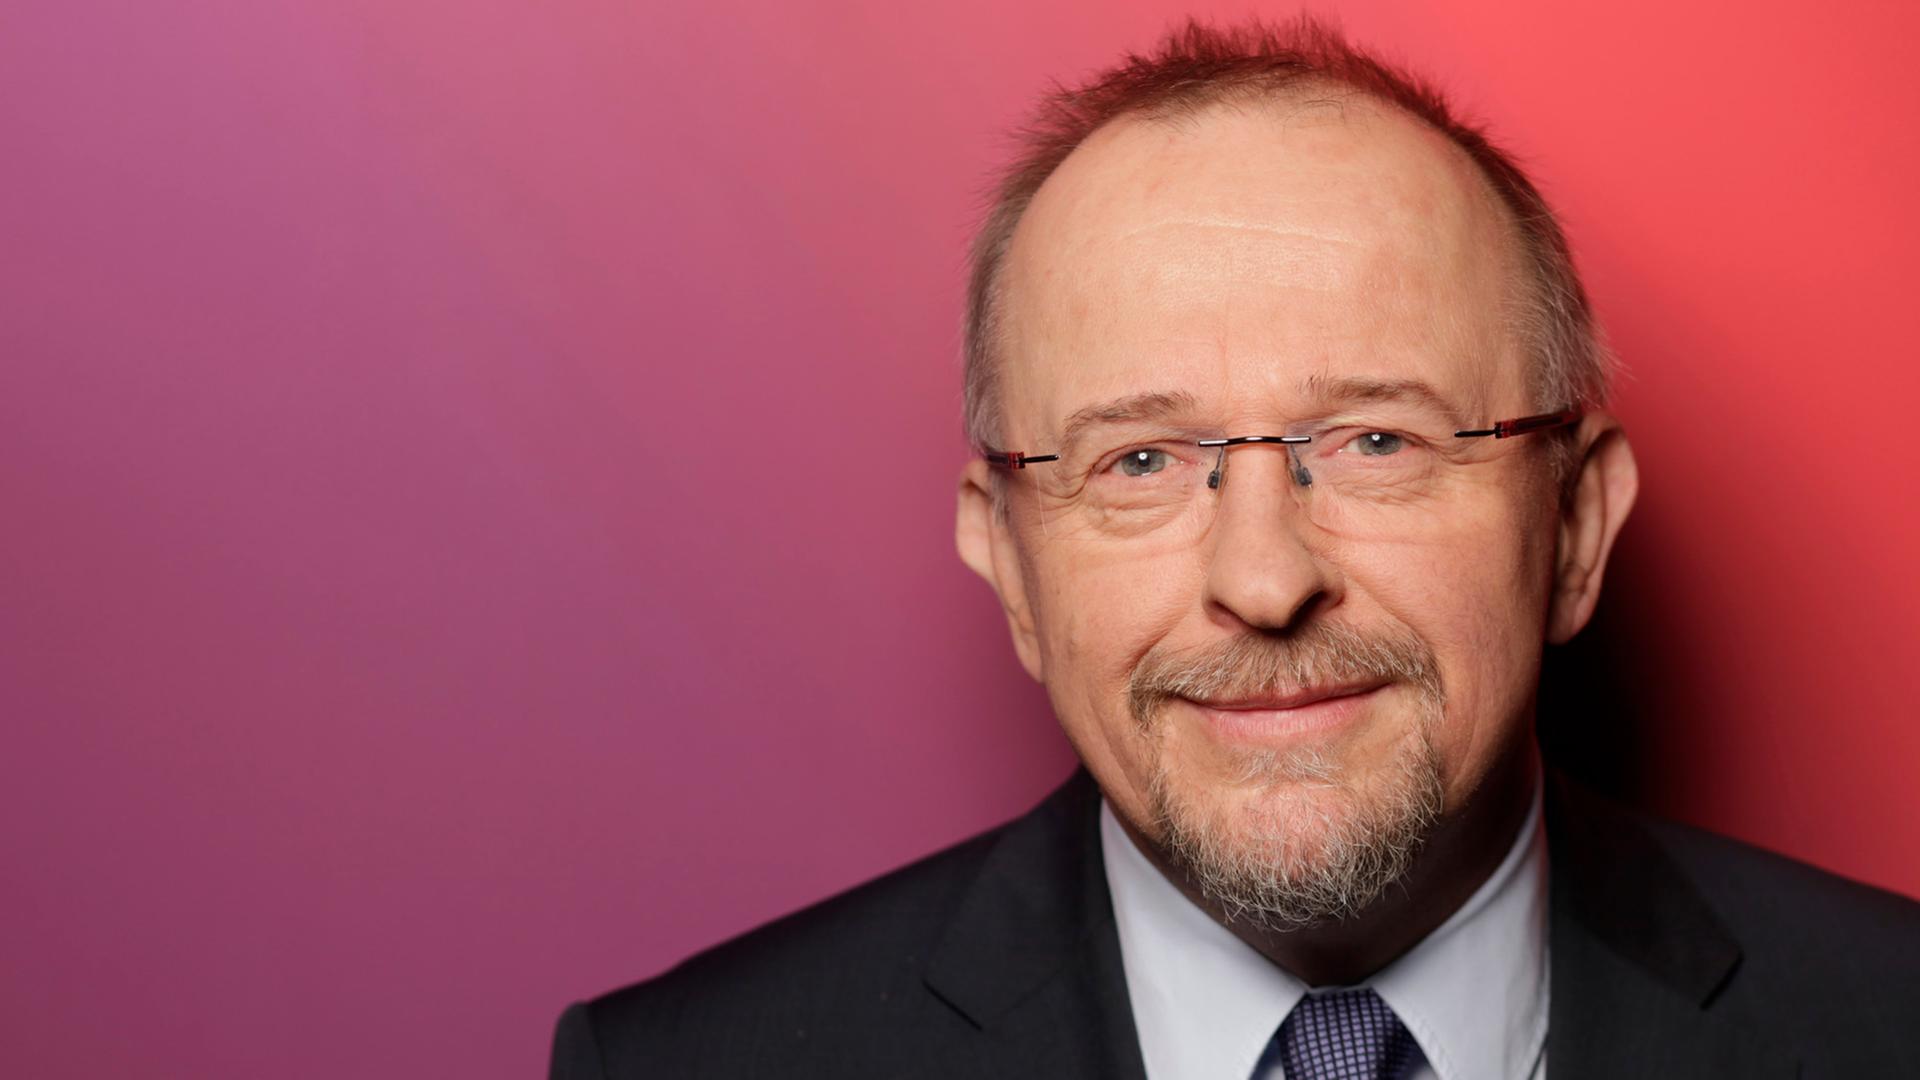 Der SPD-Fraktionsvize und Sprecher der NRW-Landesgruppe Axel Schäfer